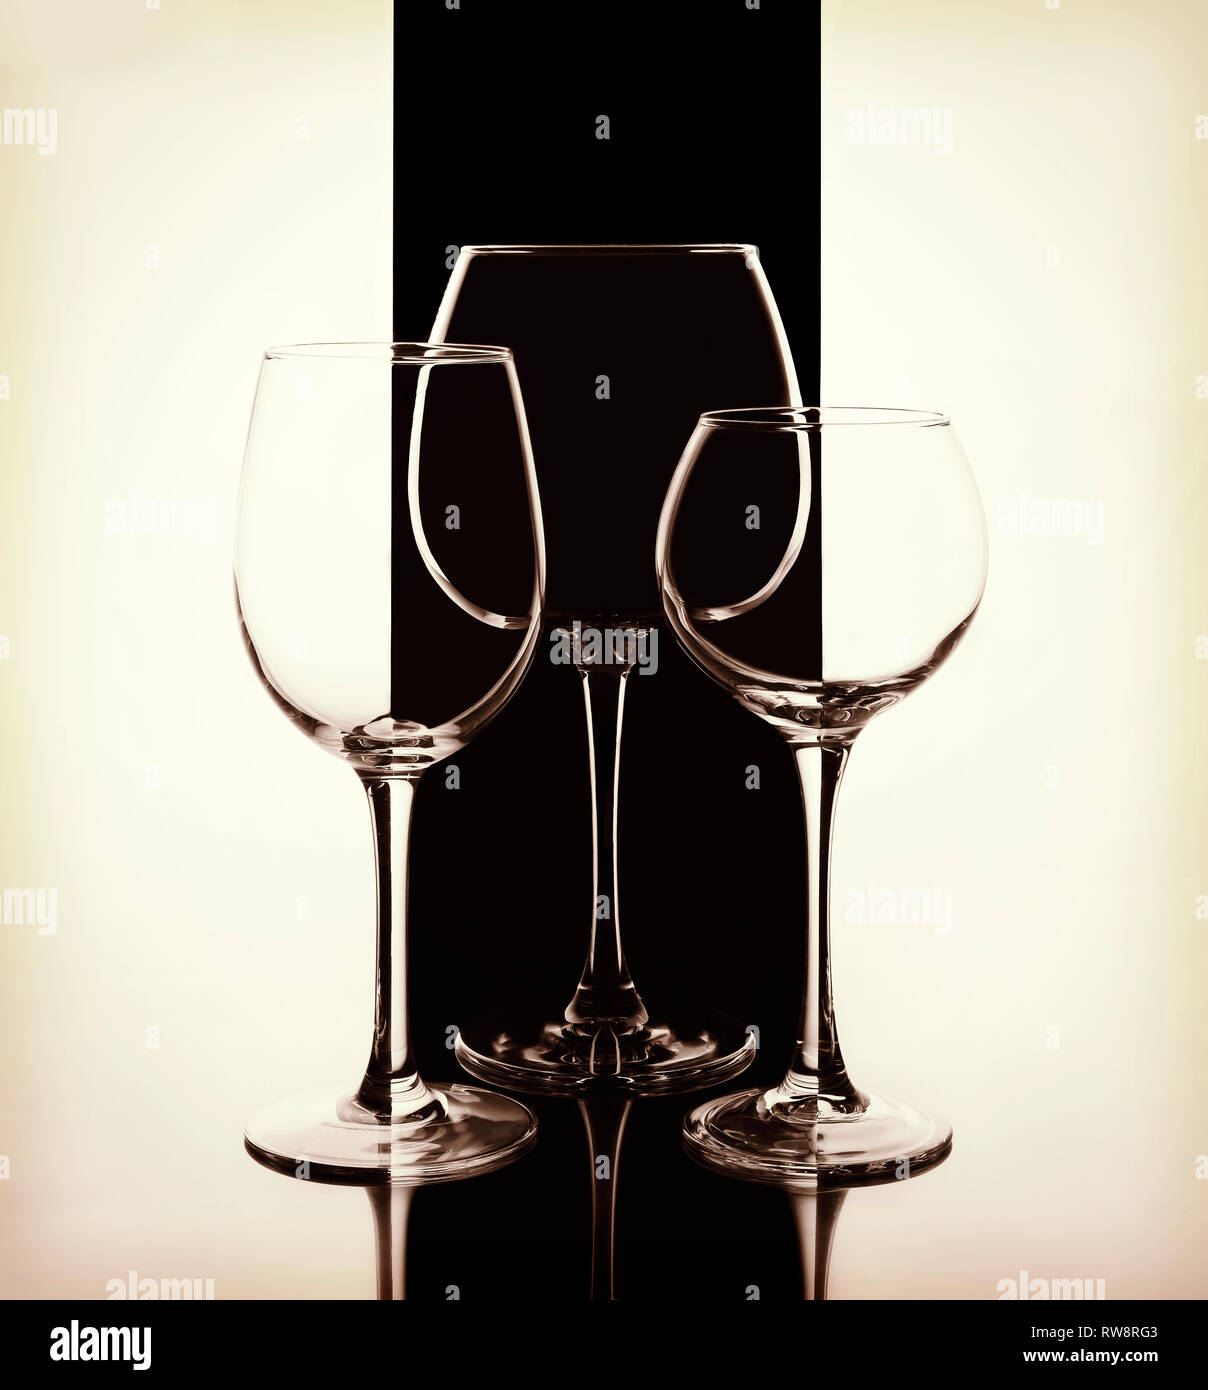 Elegante Weingläser auf einer schwarzen und weißen Hintergrund. Konzept: Luxus, Luxus, Restaurant, luxuriösen Service Stockfoto